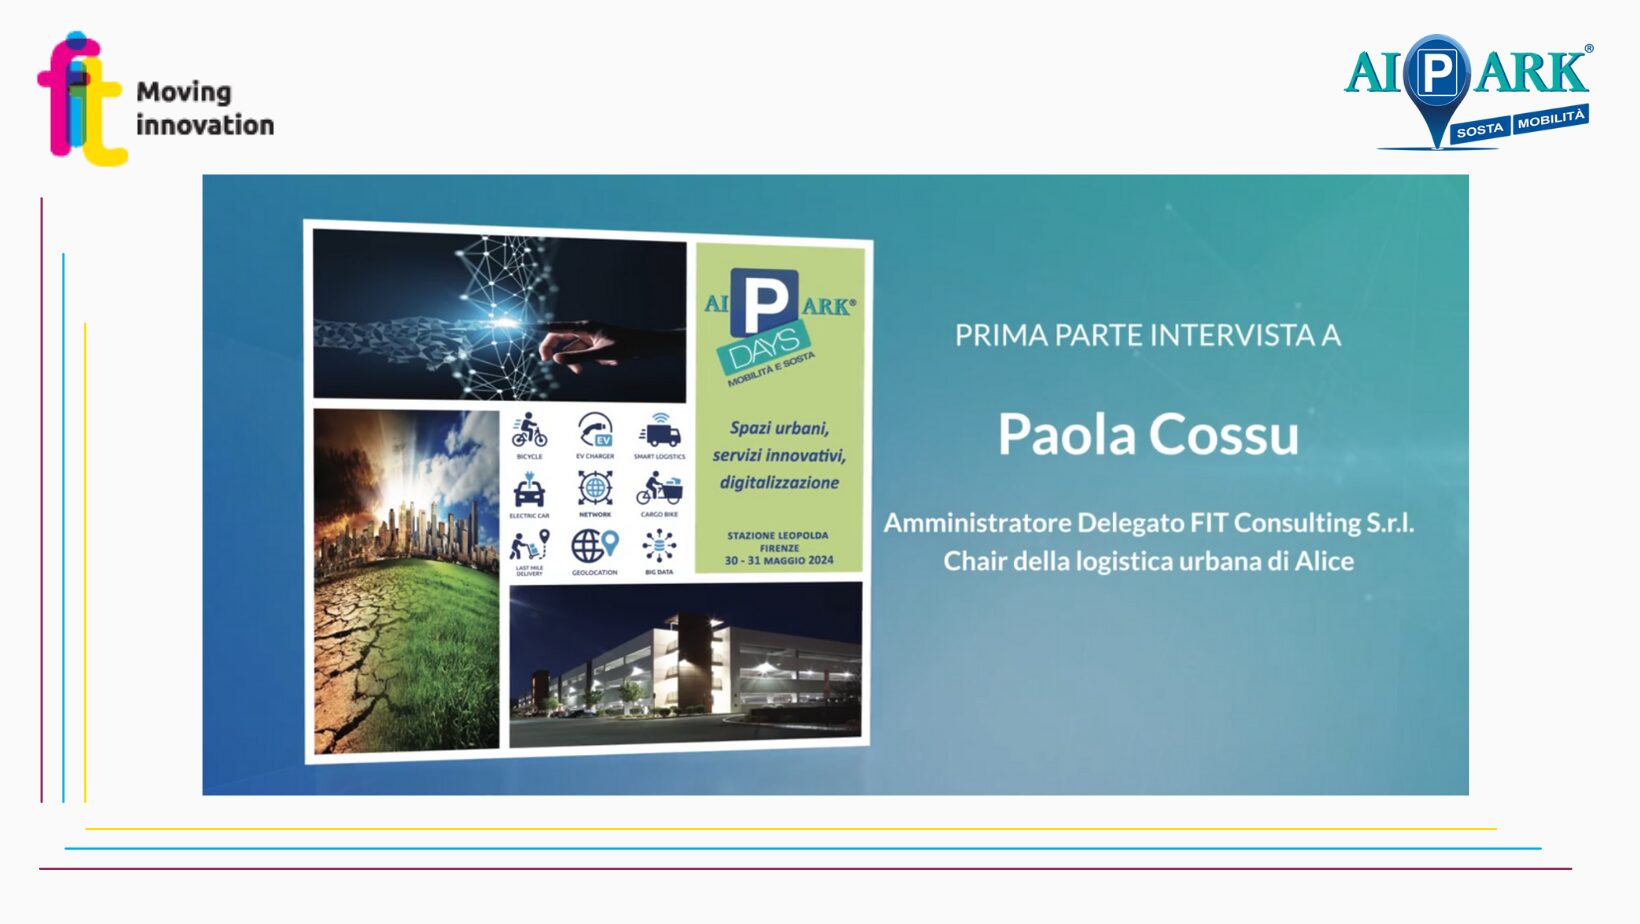 “Ecco come gestire gli spazi urbani per la logistica in maniera efficiente e sostenibile”: intervista a Paola Cossu, CEO FIT, in vista della sua partecipazione ai Pdays 2024